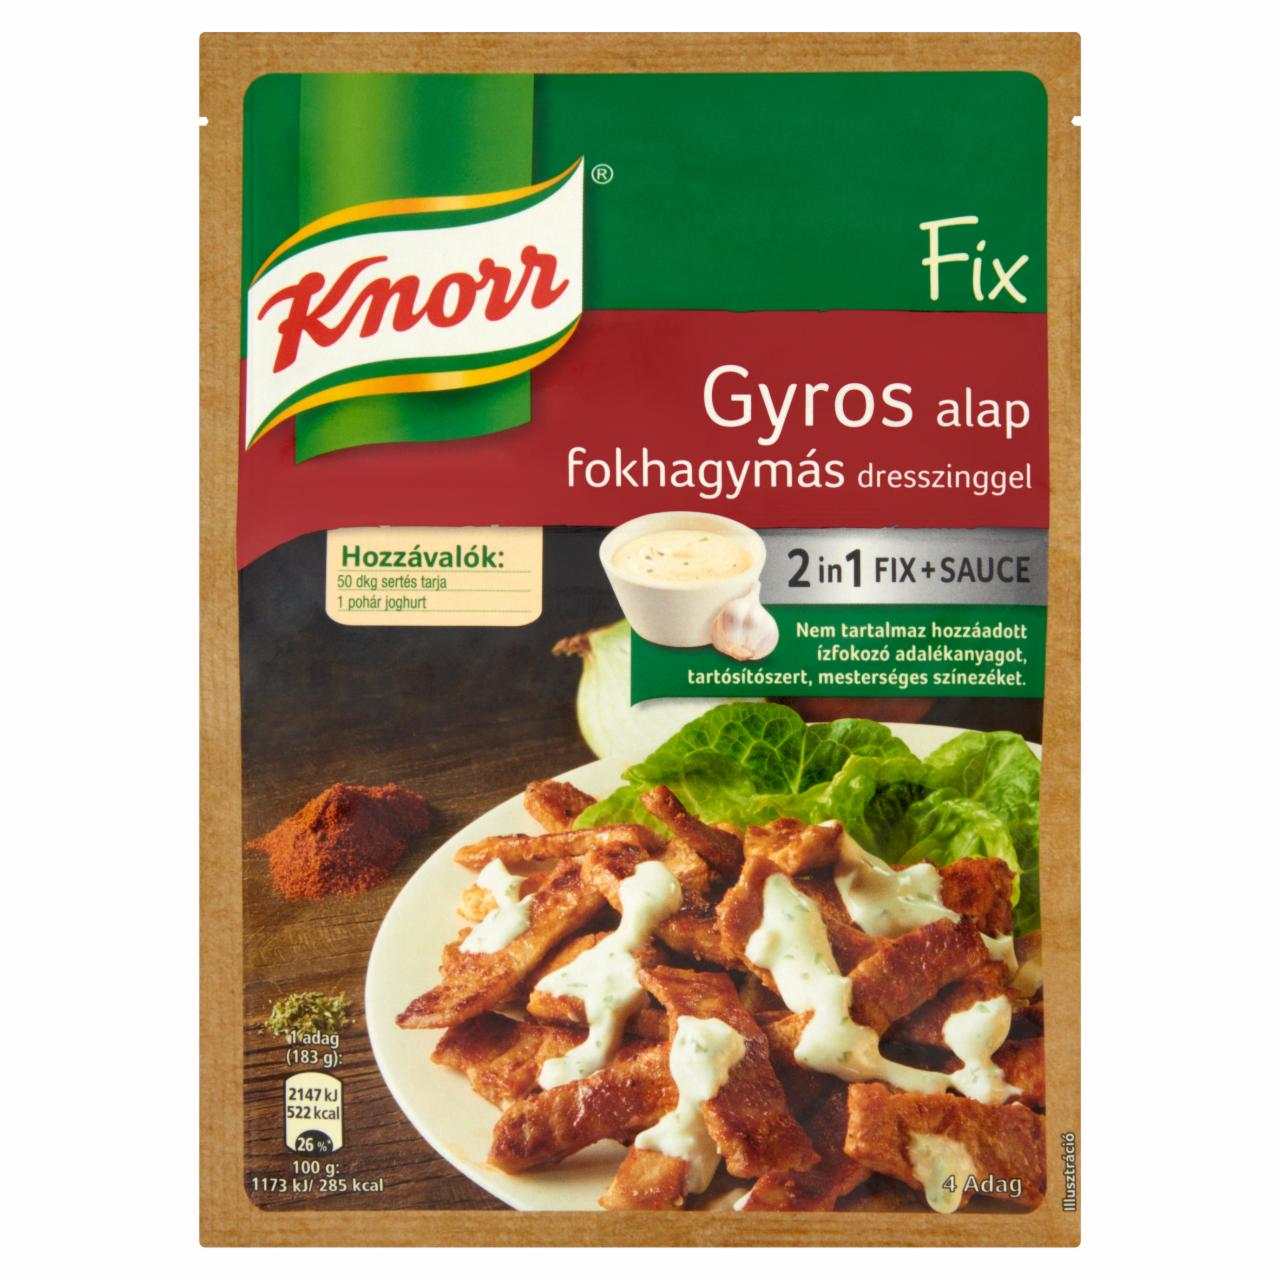 Képek - Knorr Fix gyros alap fokhagymás dresszinggel 40 g